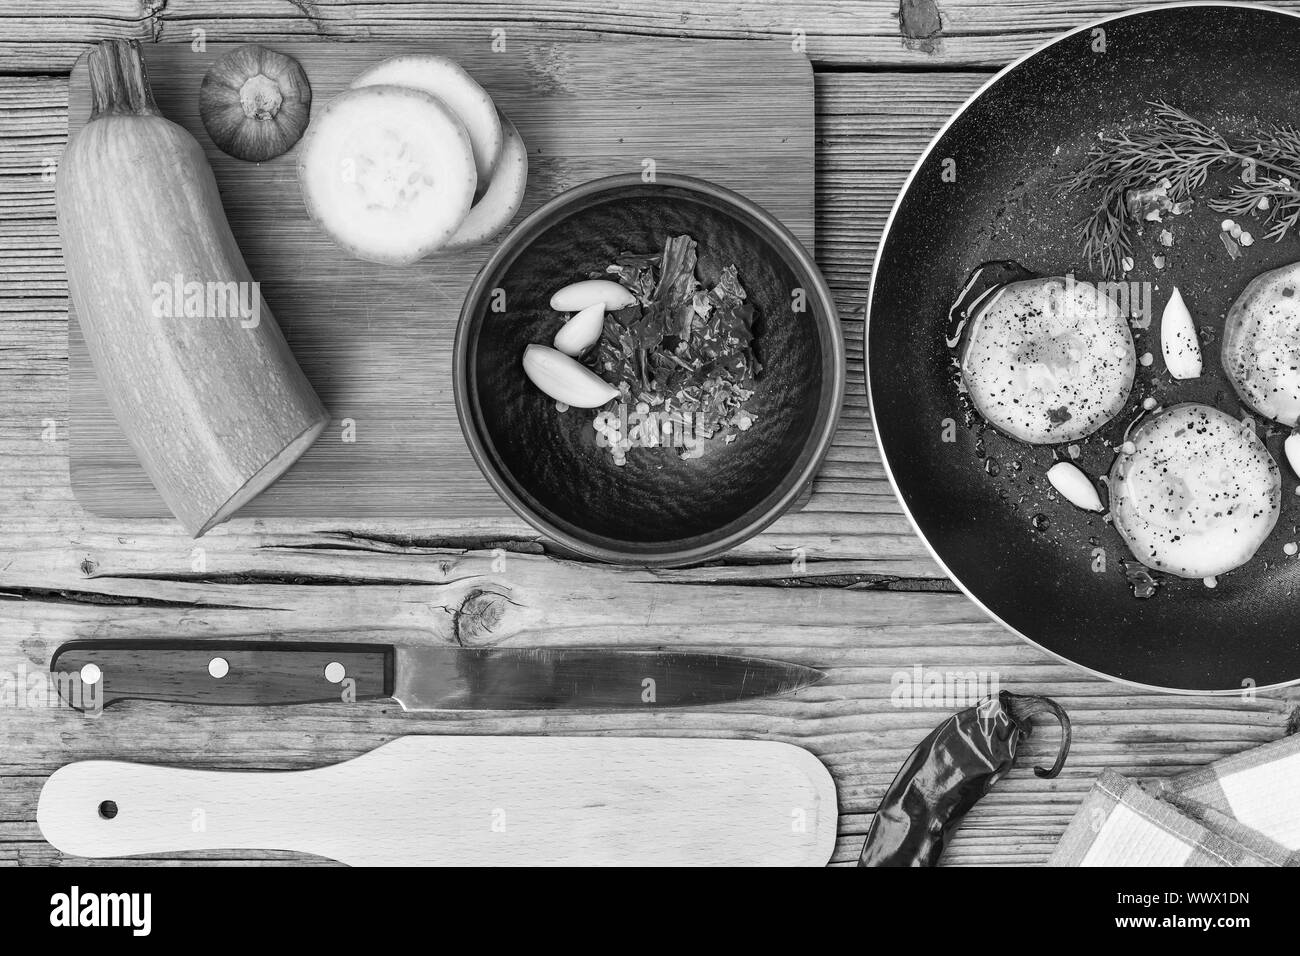 La saine alimentation, la nourriture végétarienne. Courgettes crus préparés pour faire frire dans une poêle avec un peu d'épices, garli Banque D'Images